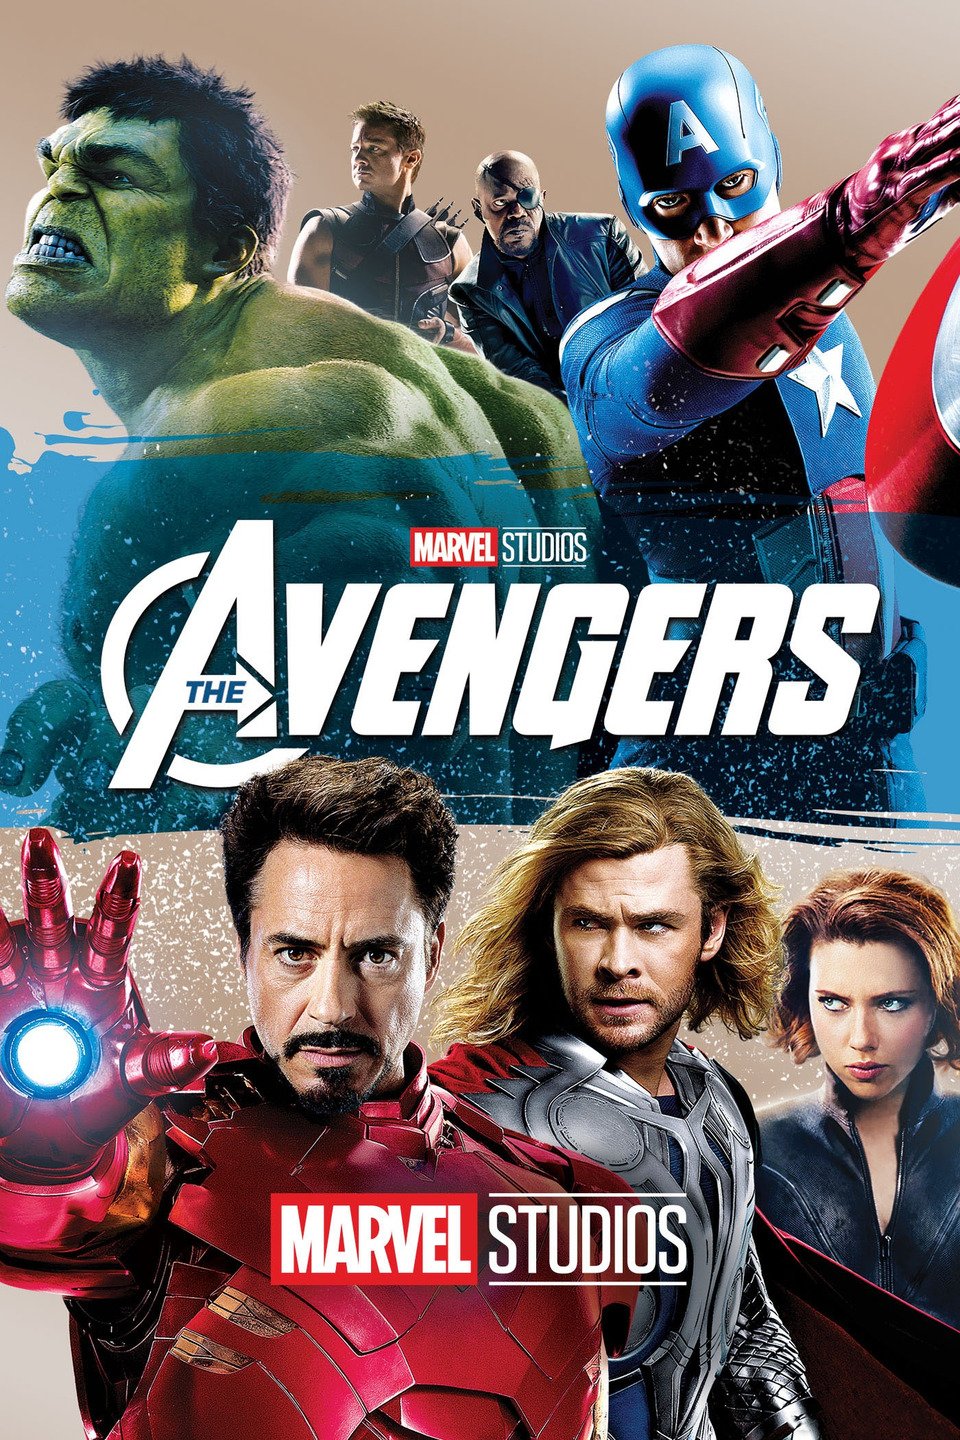 The Avengers, Superhero Films Wiki